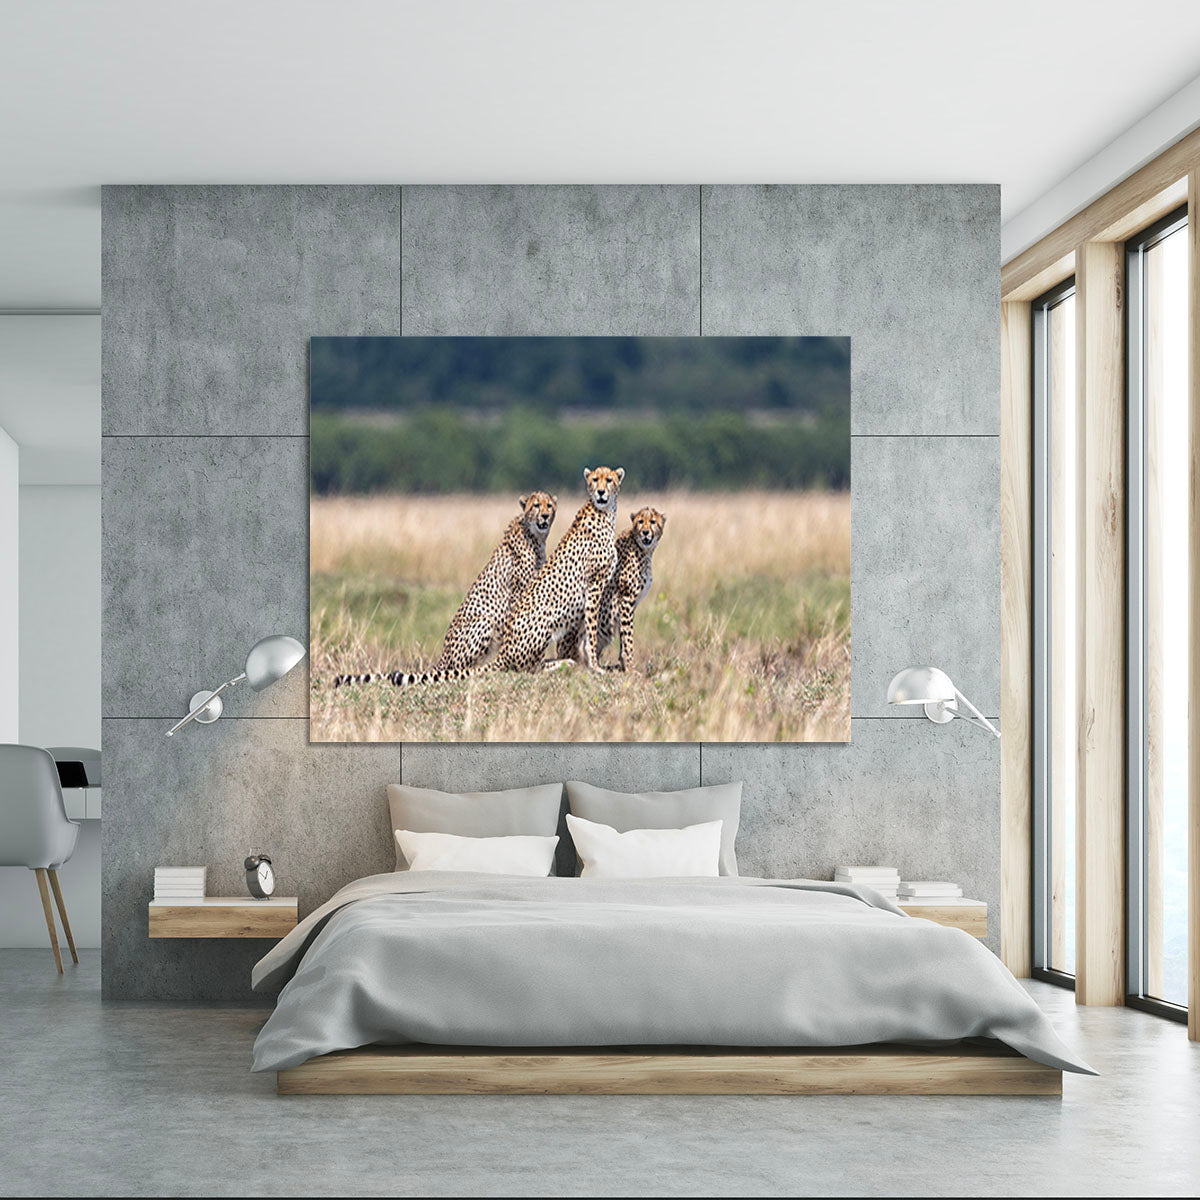 Three Cheetahs Canvas Print or Poster - Canvas Art Rocks - 5